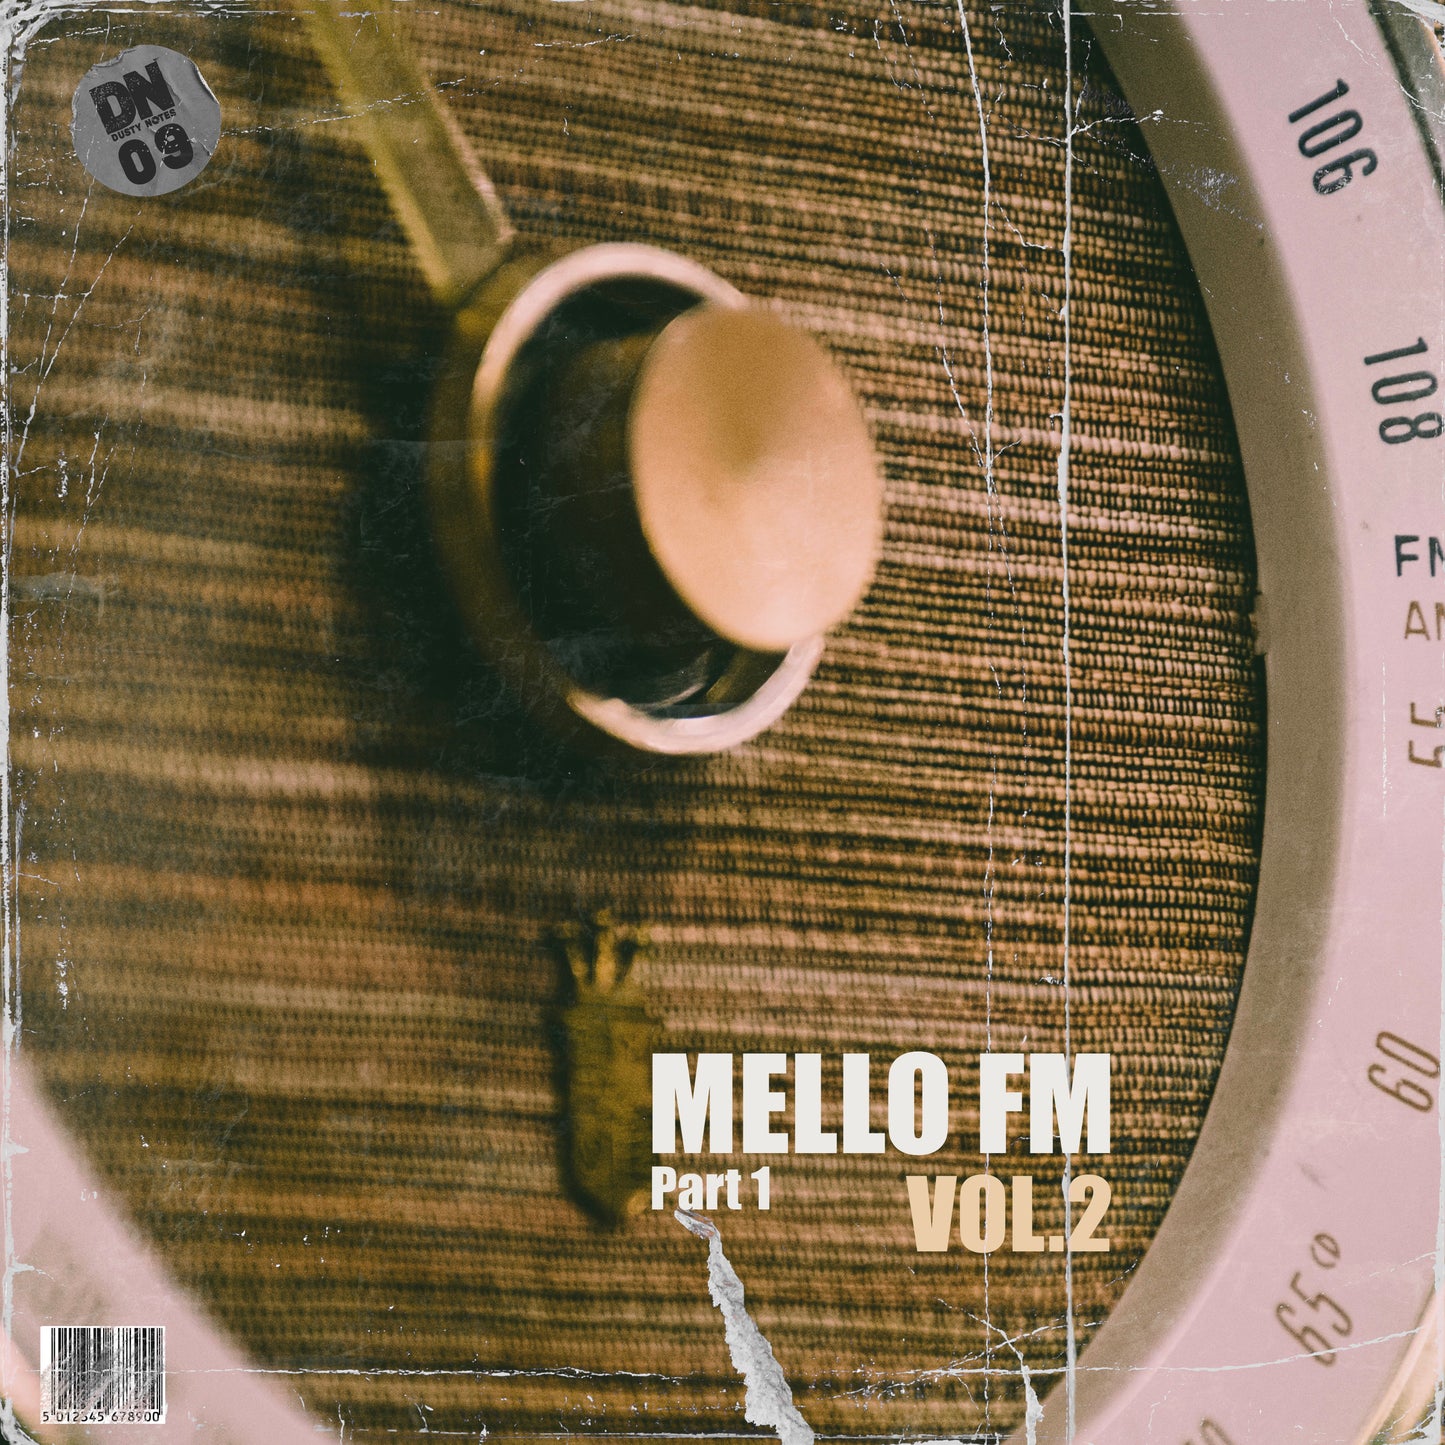 MELLO FM VOL.2 (Part.1)